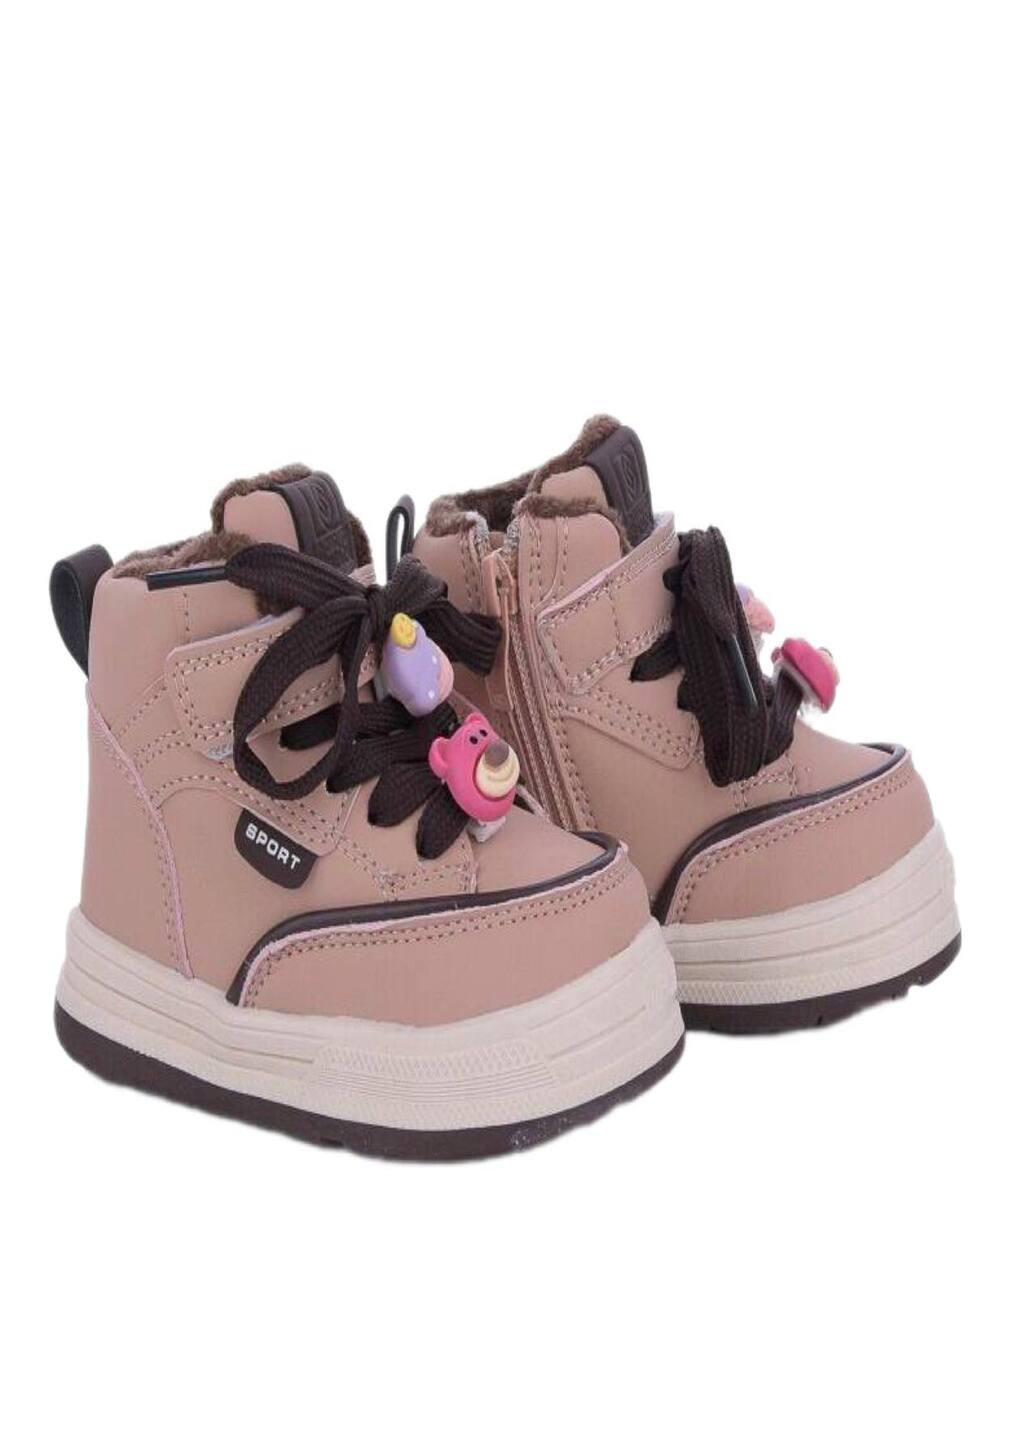 Розово-коричневые осенние ботинки хайтопы для девочки в розовом цвете. Paliament